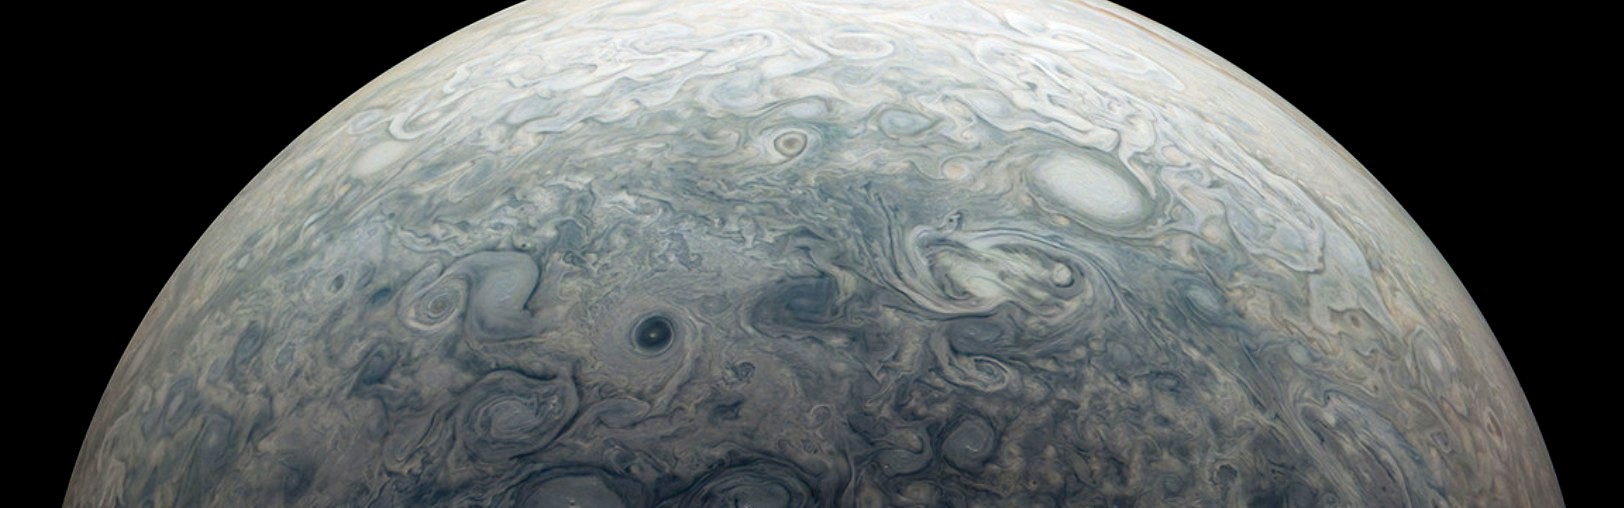 Une image de la mission Juno de la Nasa capture l'hémisphère nord de Jupiter autour de la région connue sous le nom de Jet N7. Les vents forts de la planète créent les nombreuses tempêtes tourbillonnantes visibles près du sommet de son atmosphère.&nbsp;© Nasa/JPL-Caltech/SwRI/MSSS, traitement d'image par Kevin M. Gill